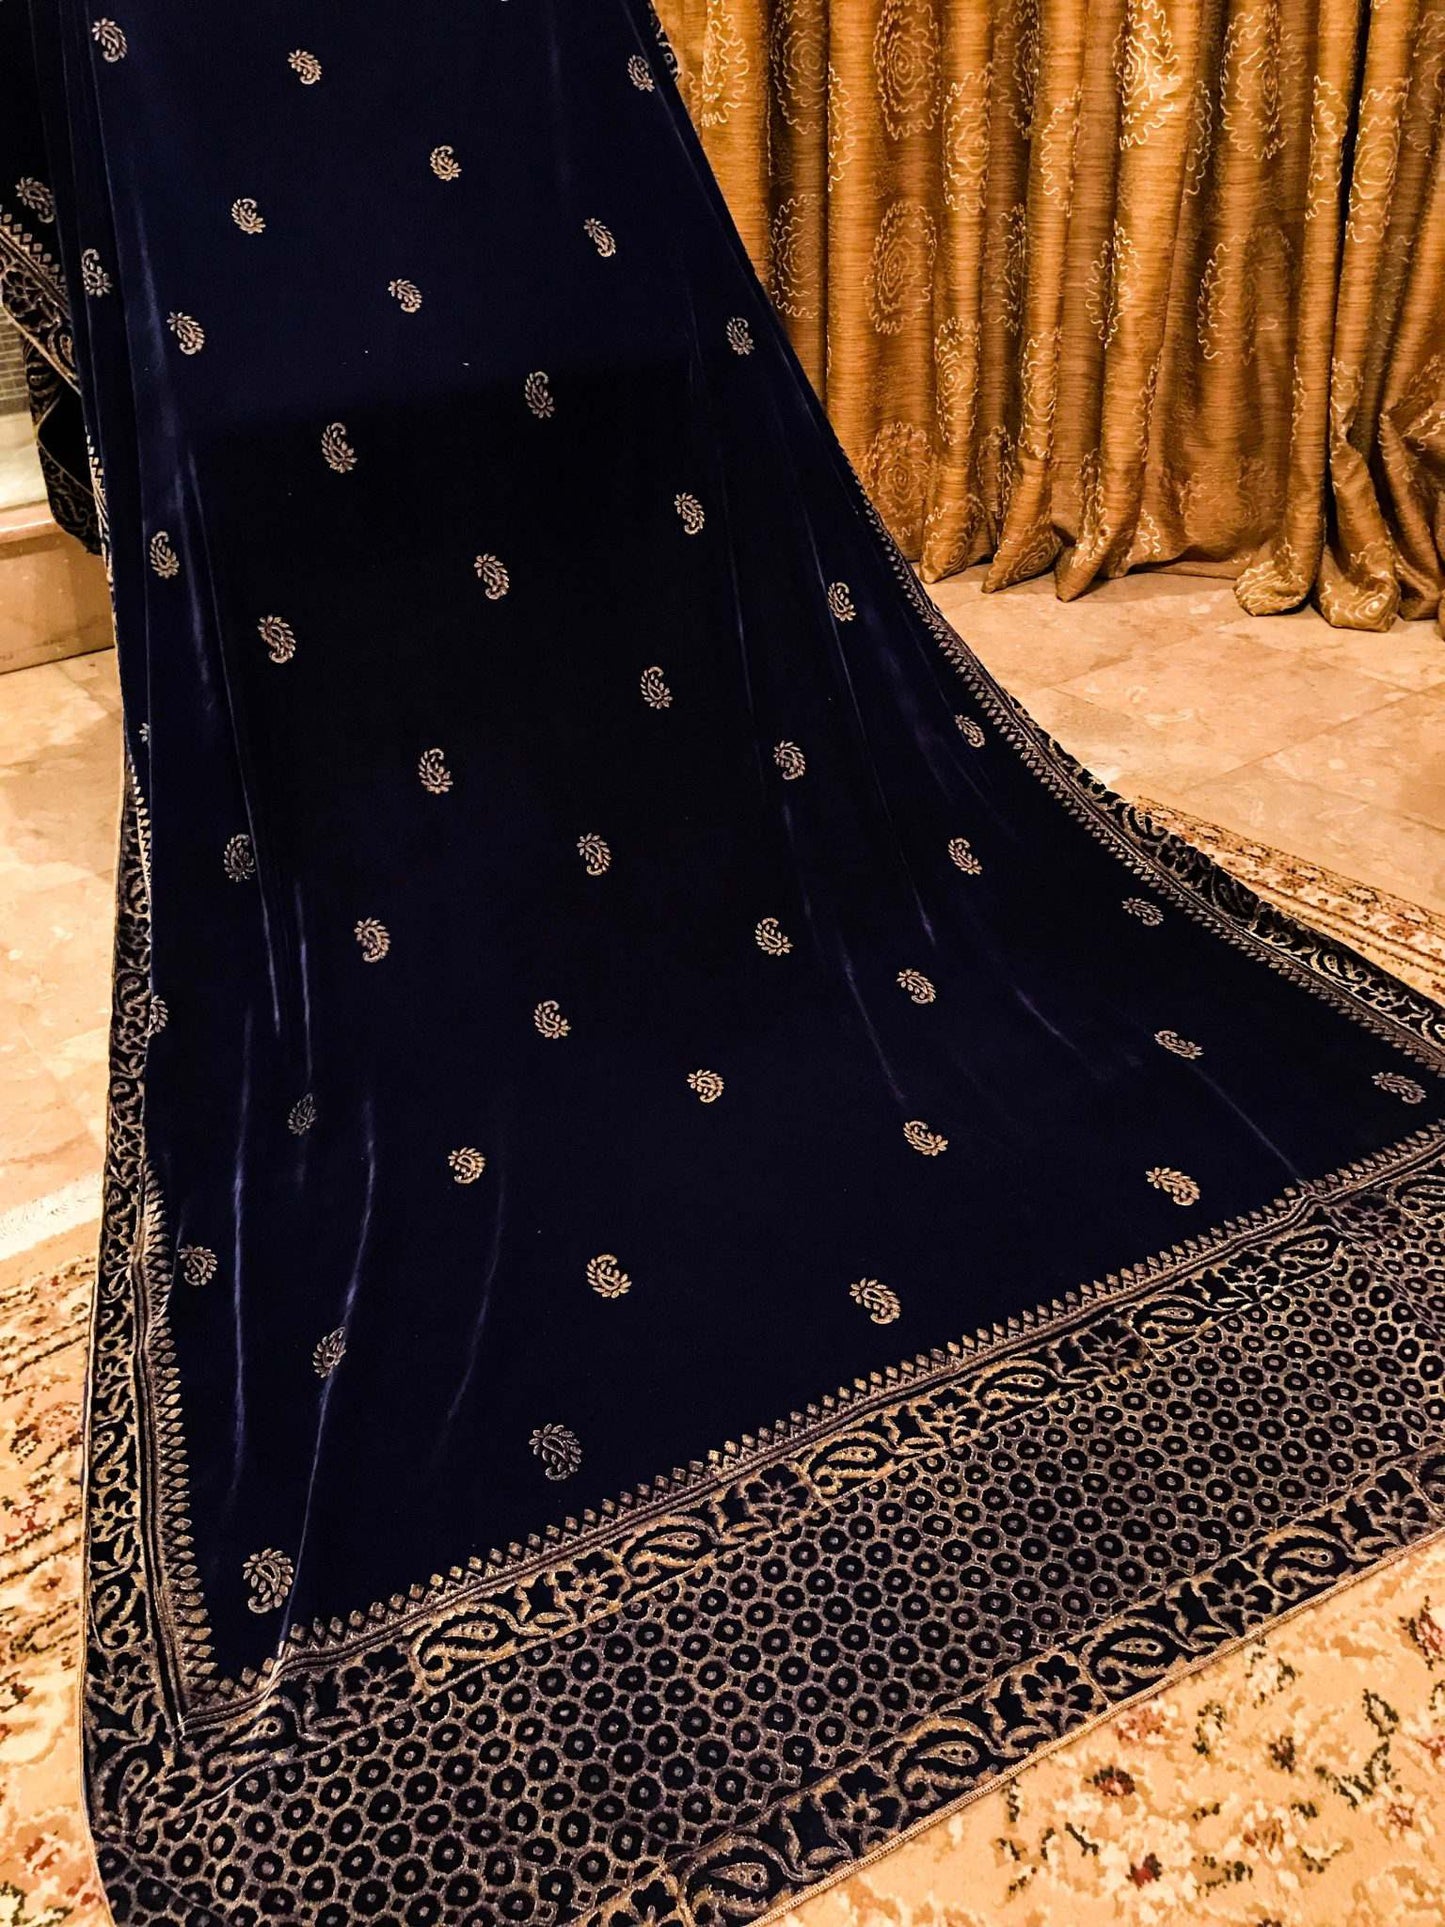 VT-11 Blue dot net velvet shawl